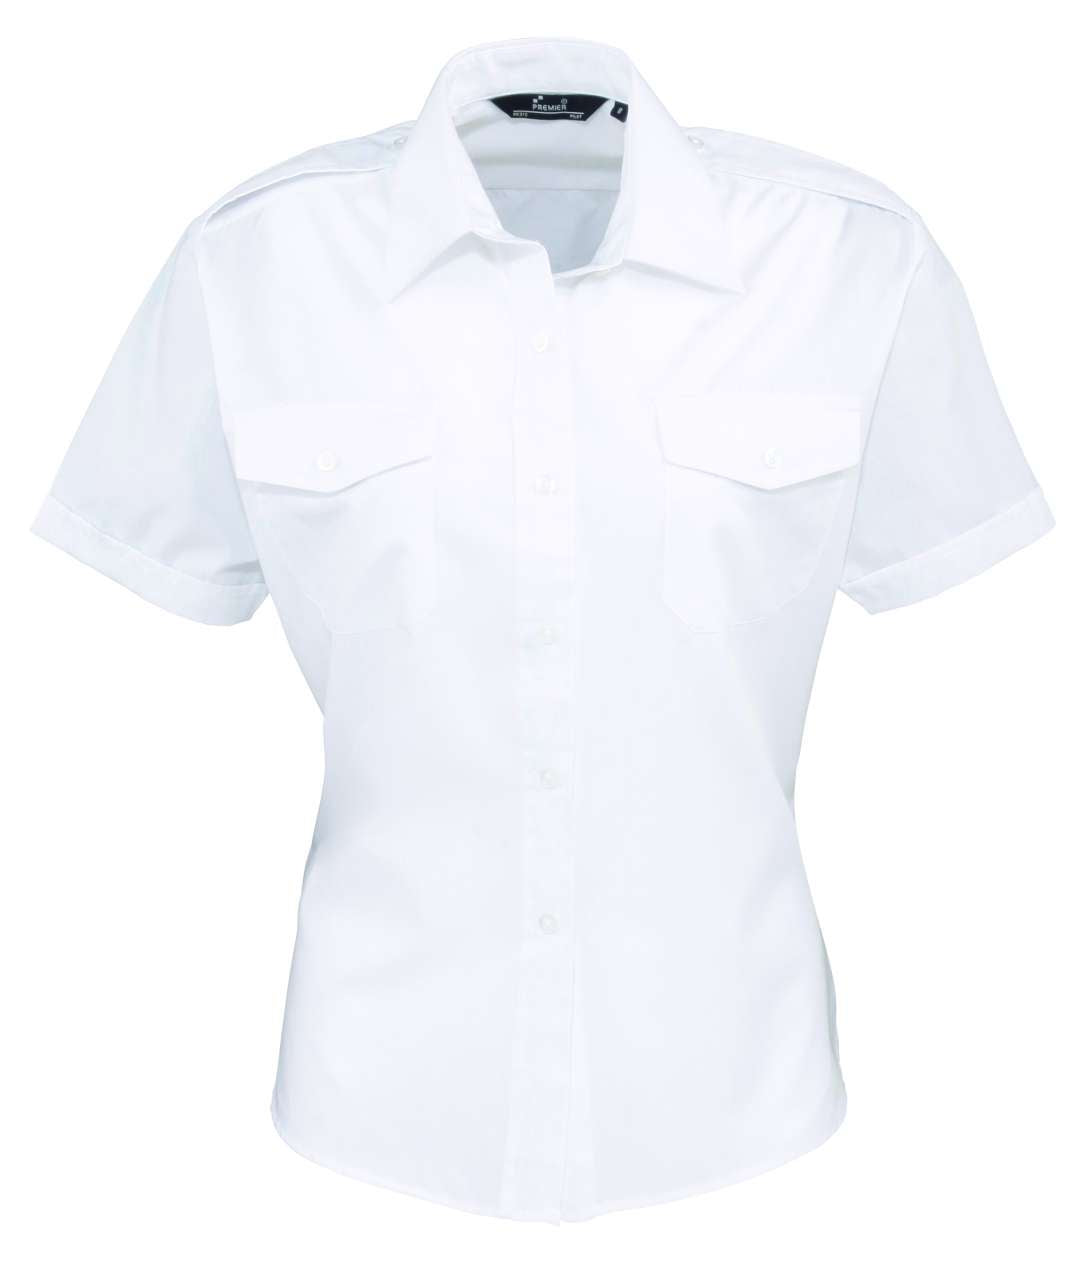 Premier Damen Piloten Hemd Diensthemd Pilotenhemd Feuerwehrhemd Bluse